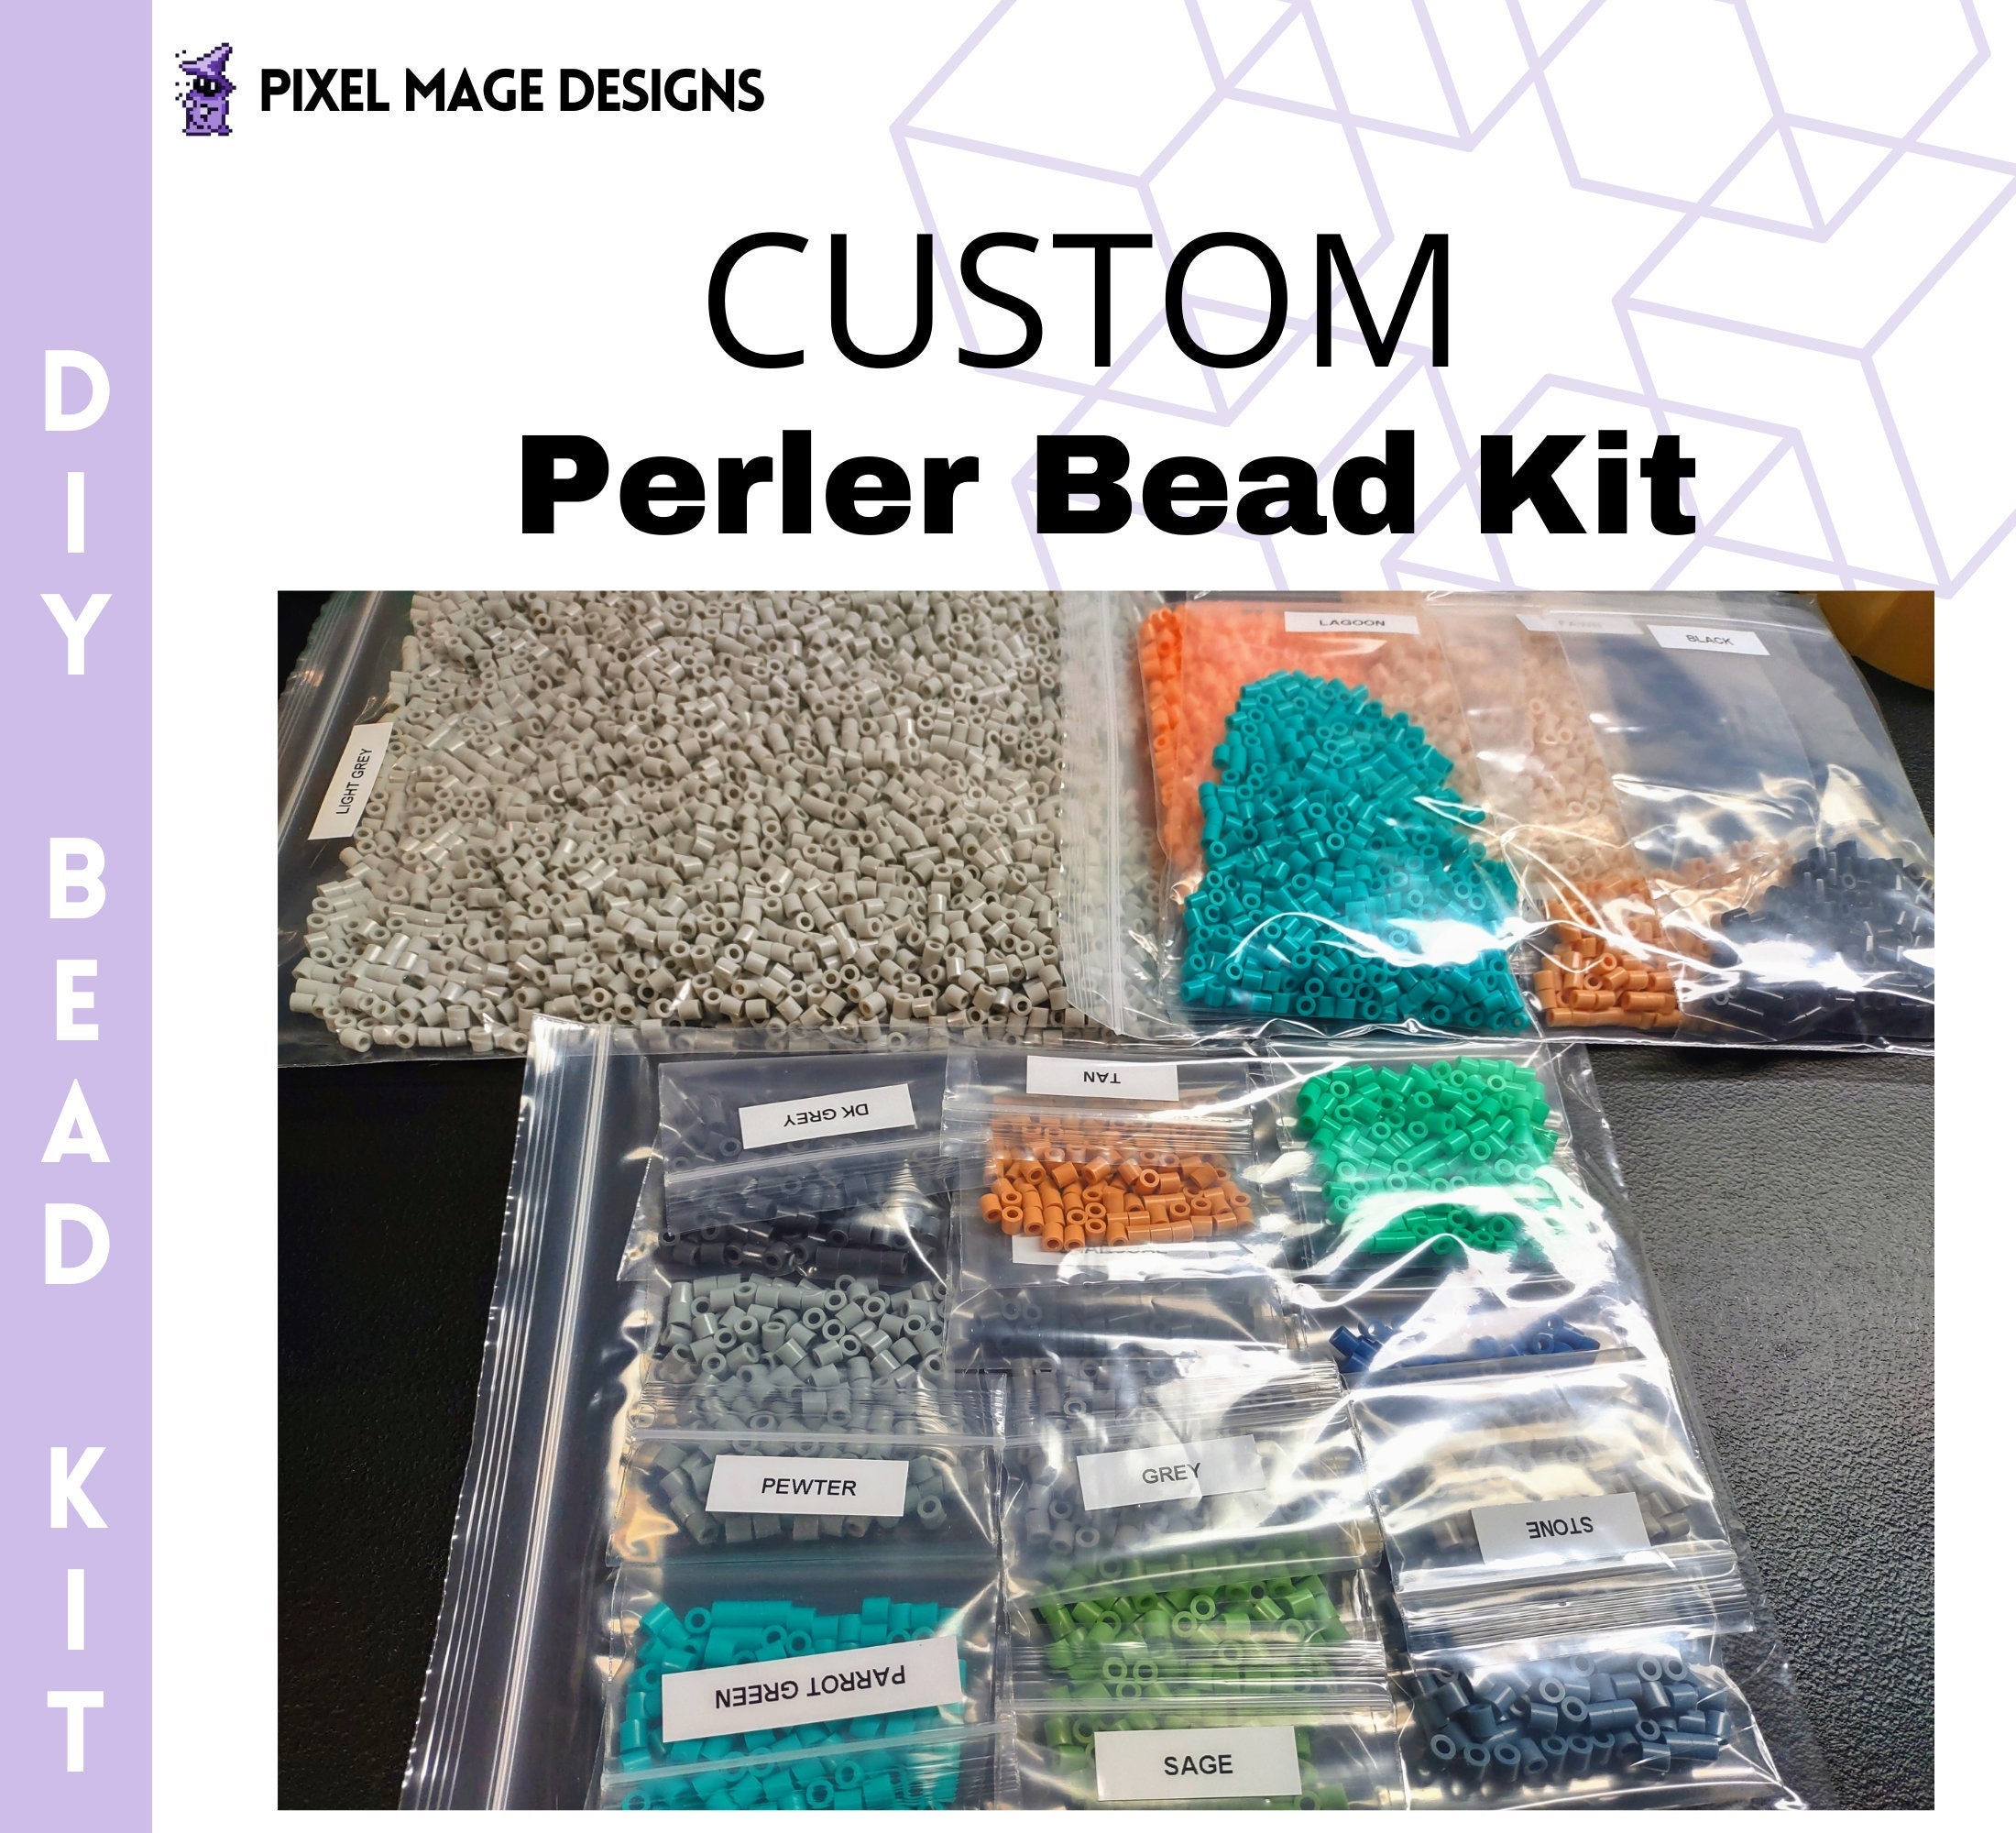 DIY Custom Perler Bead Kit Includes Sorted Beads & Printed Pattern